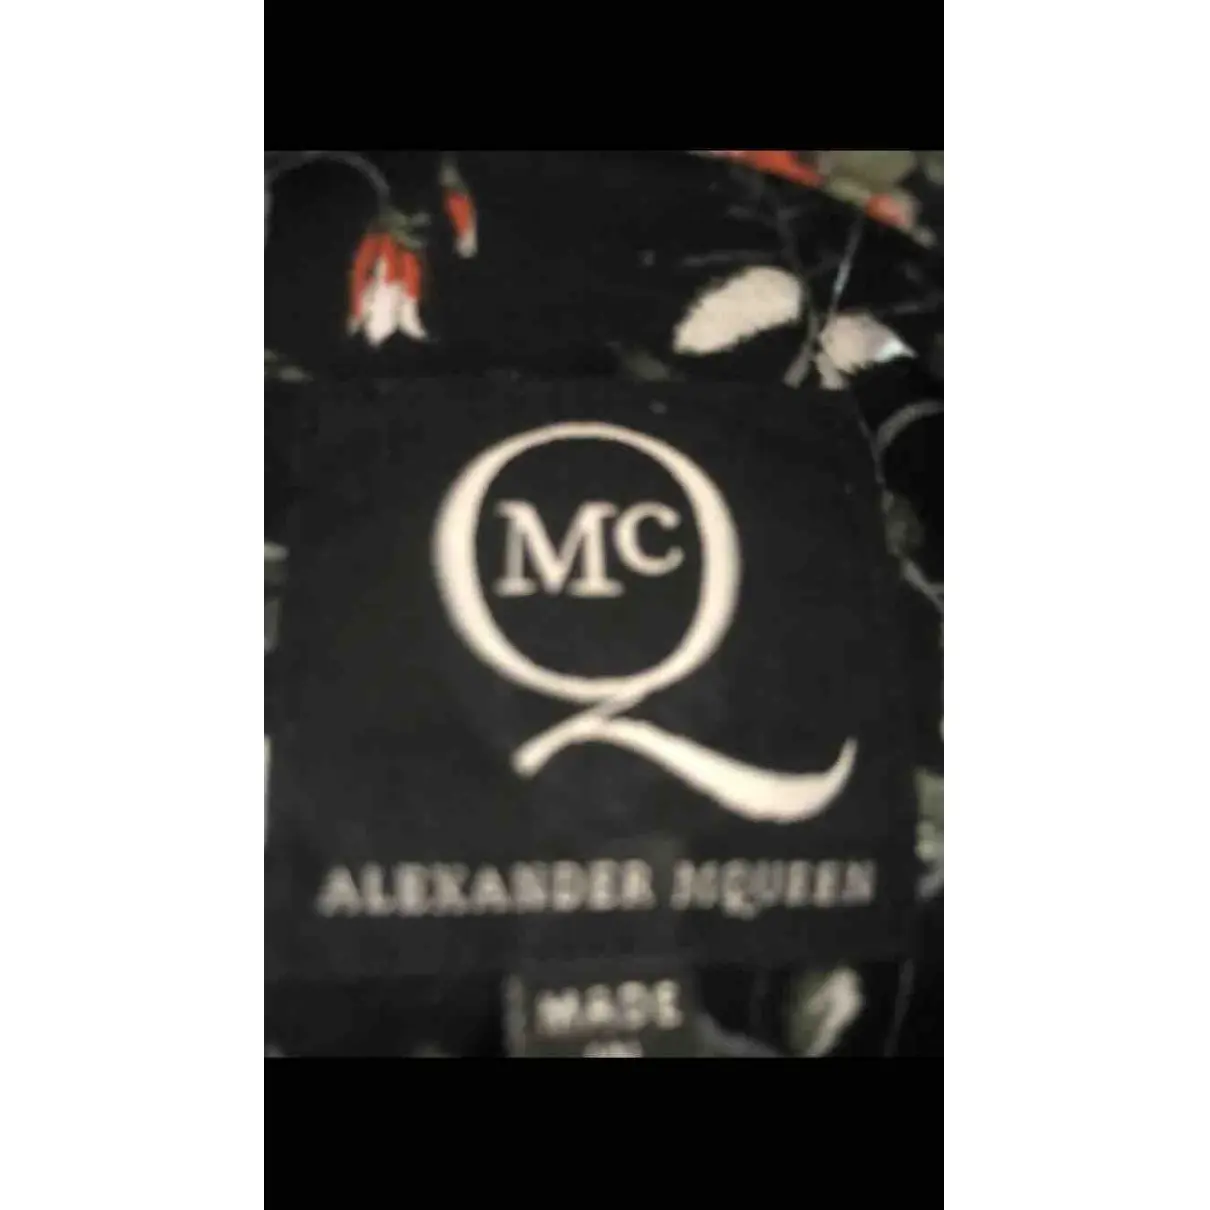 Buy Mcq Shirt online